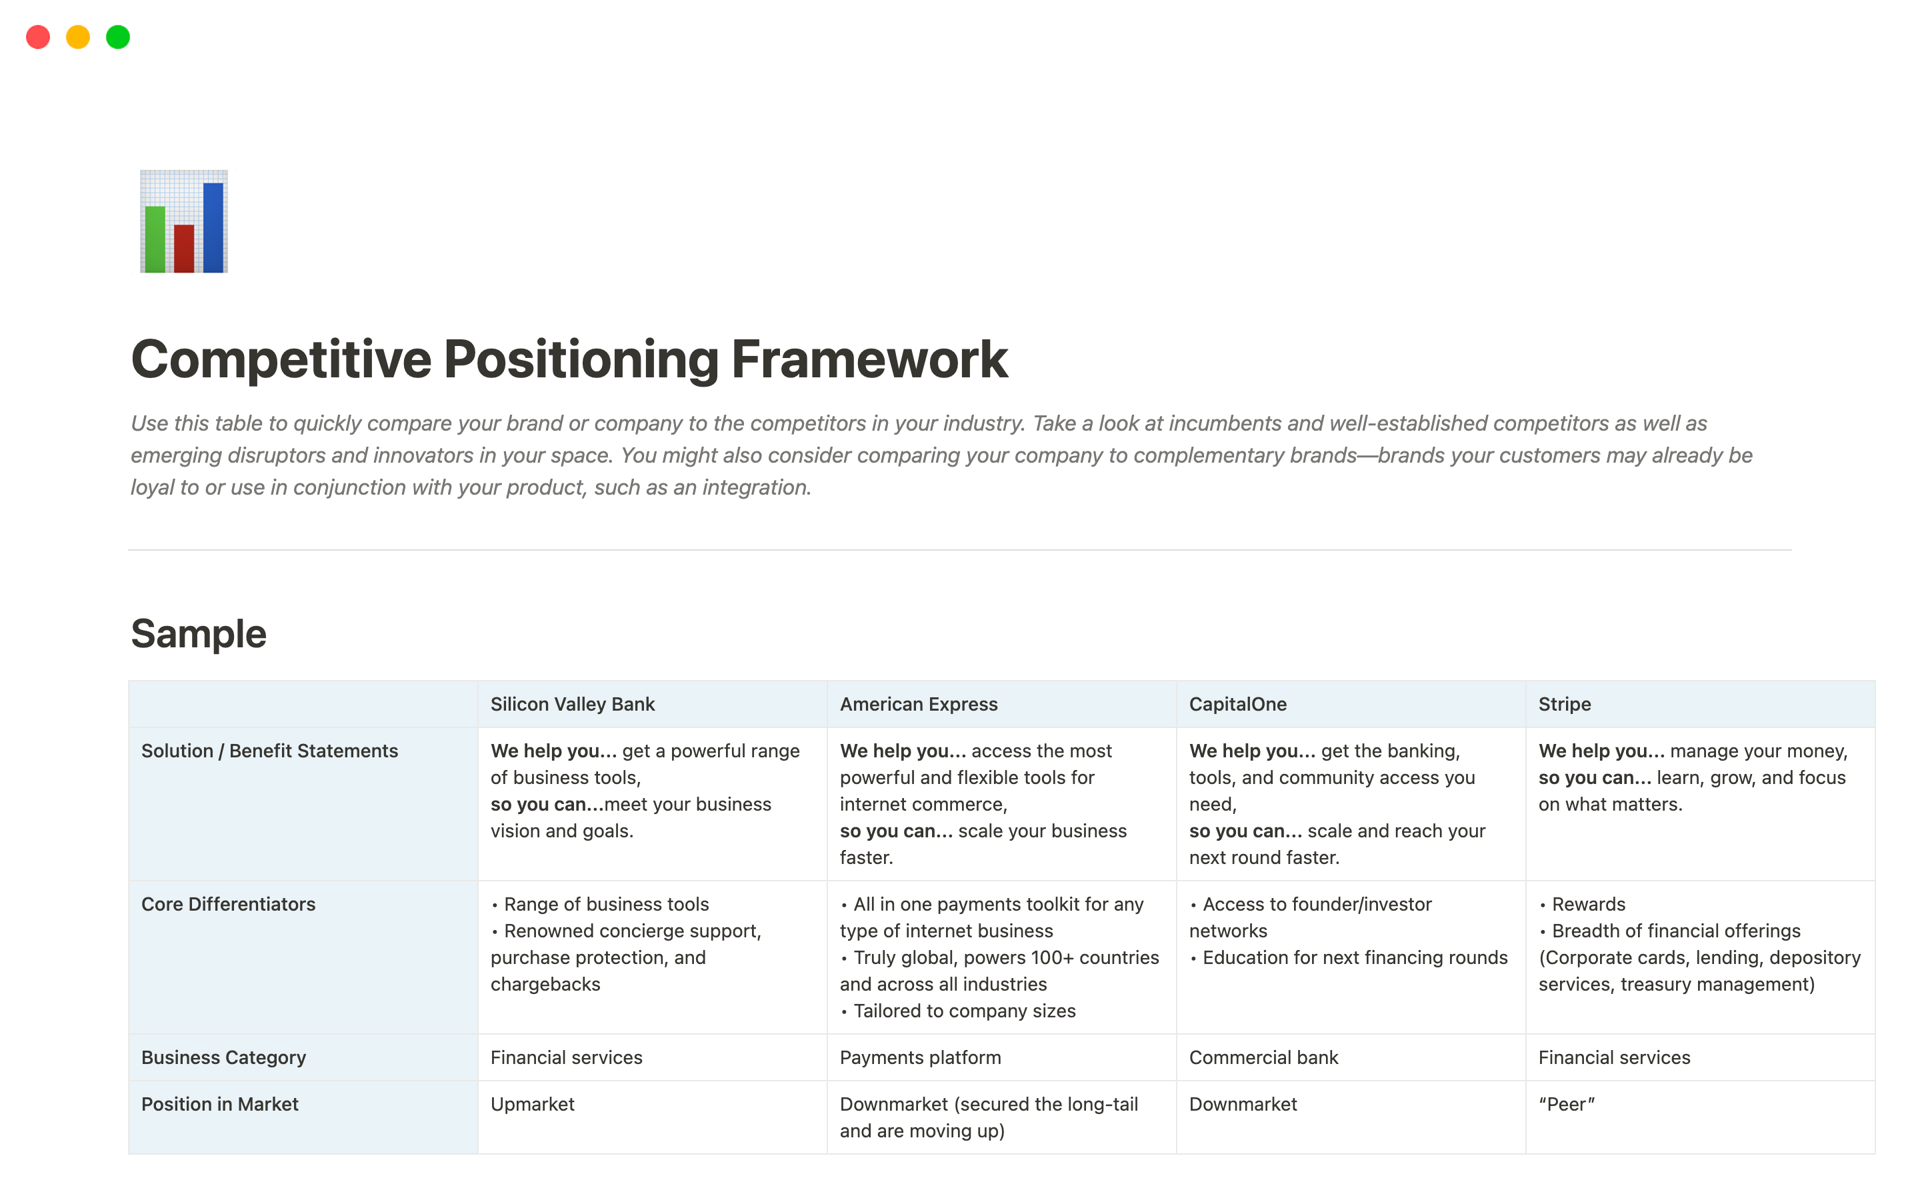 competitive-positioning-framework-kira-klaas-desktop